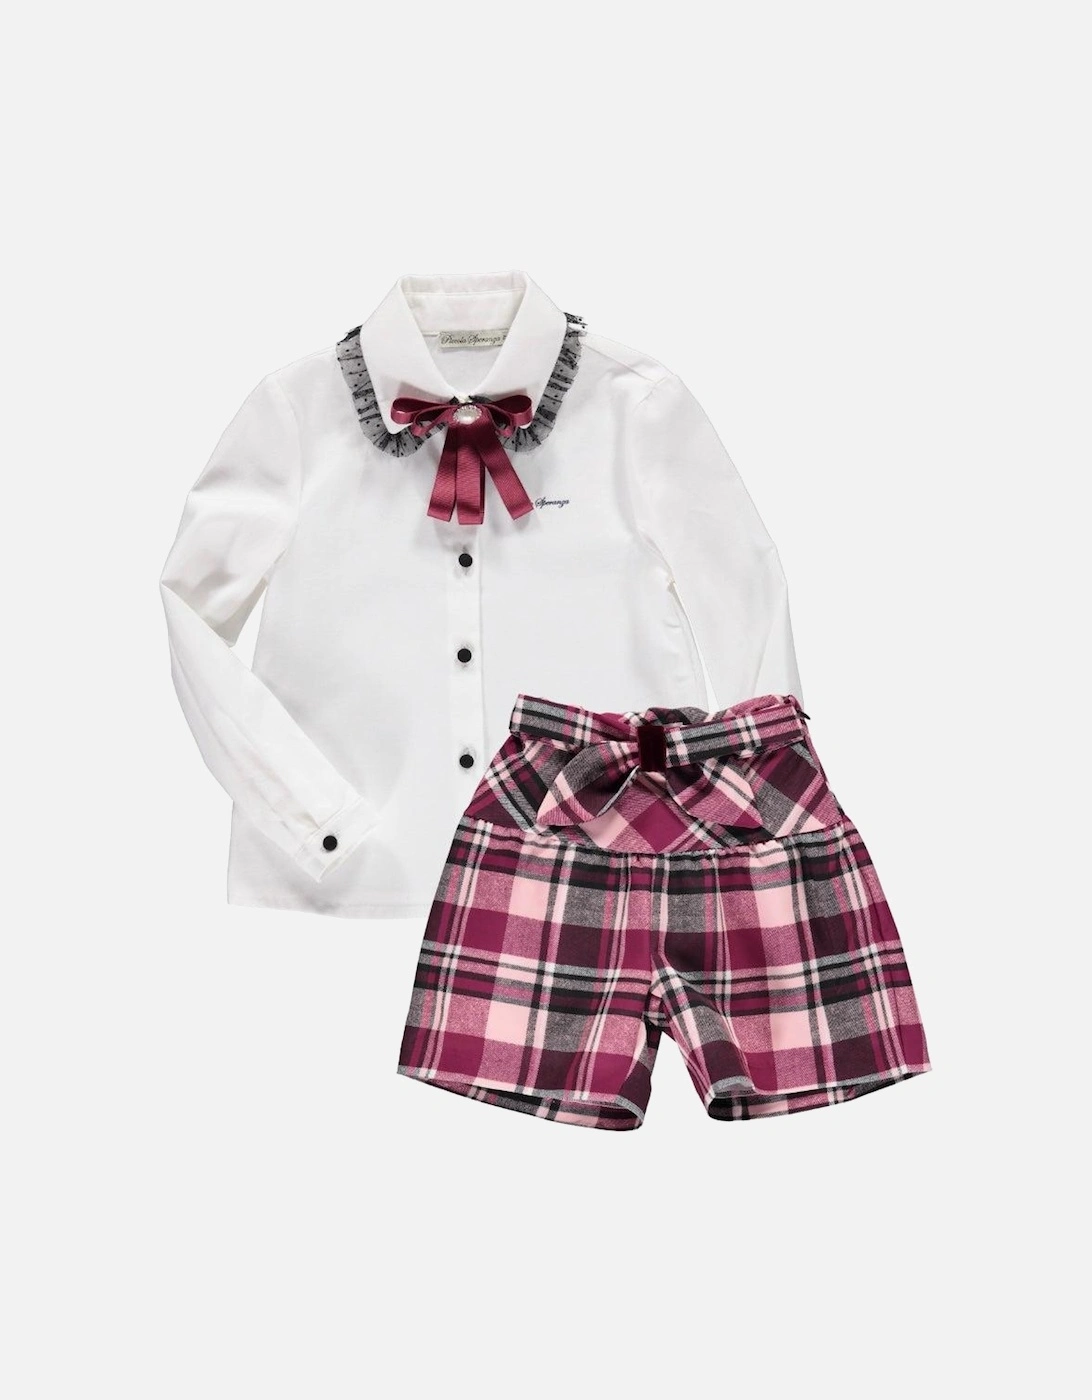 Girls Pink Tartan Shorts & Blouse, 2 of 1